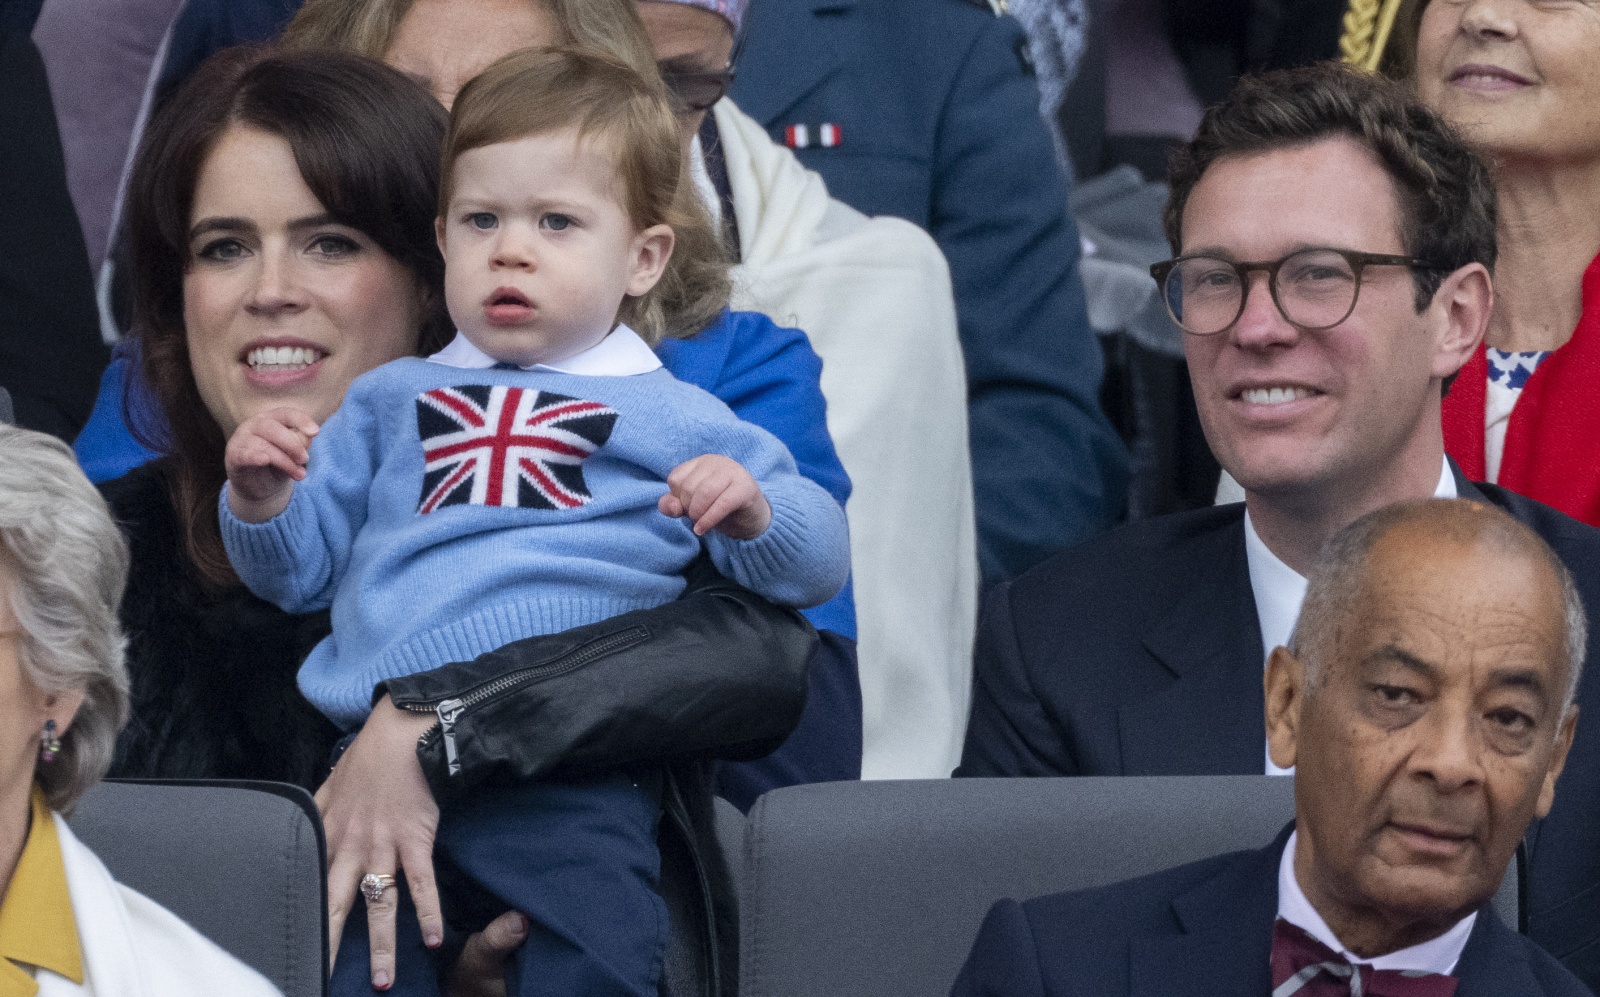 Filho da princesa Eugenie tem grandes parecenças com o príncipe Harry